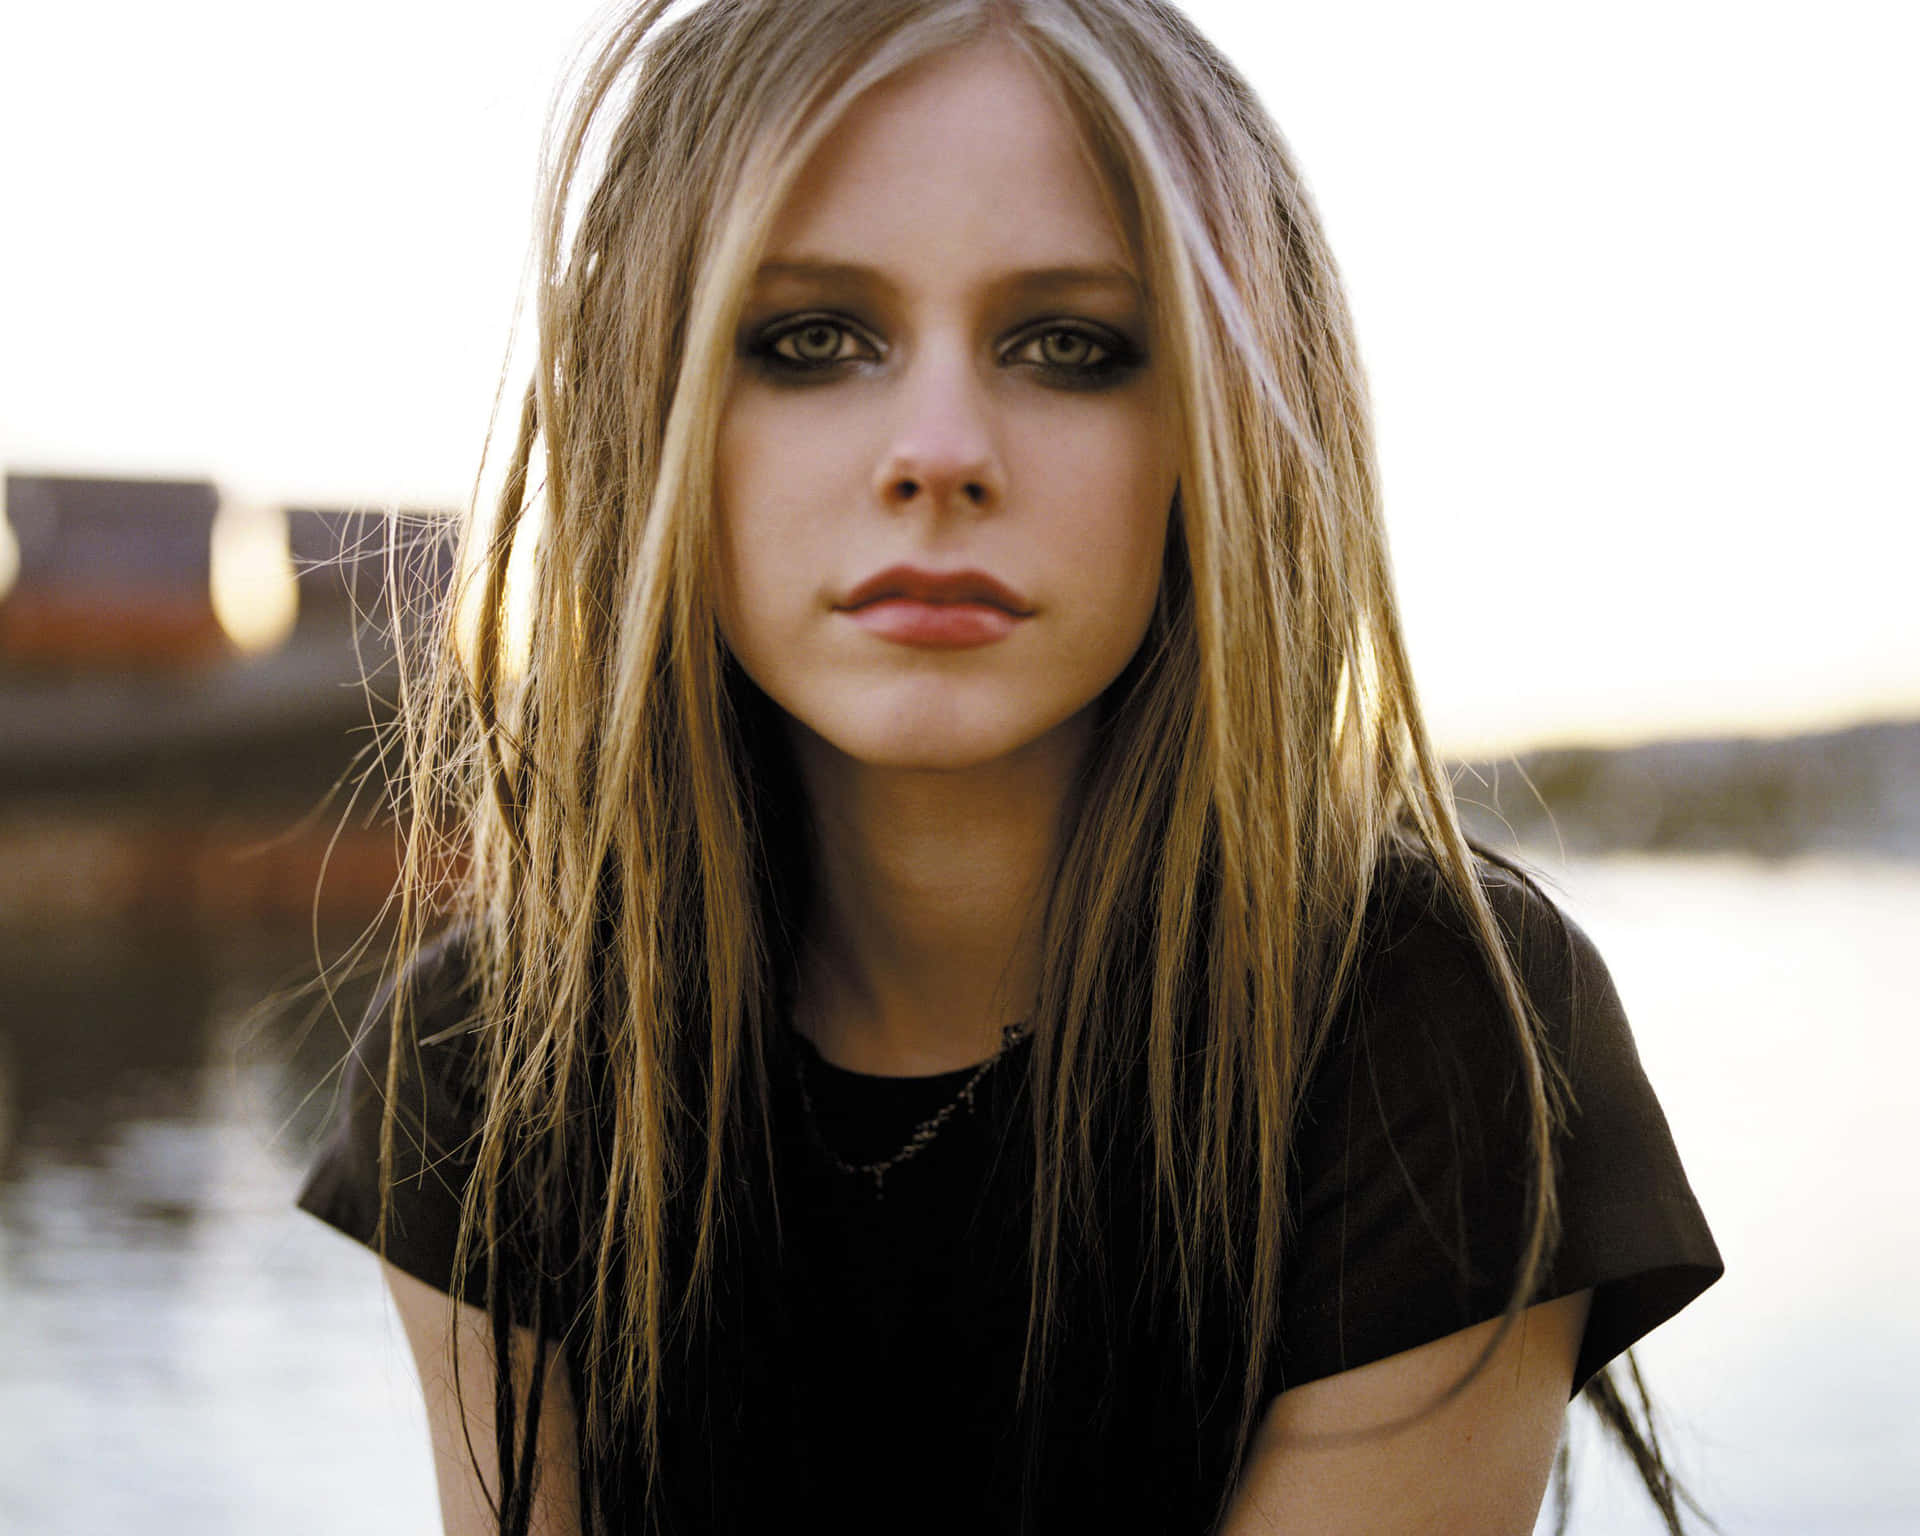 Singer Avril Lavigne enjoying the sunset